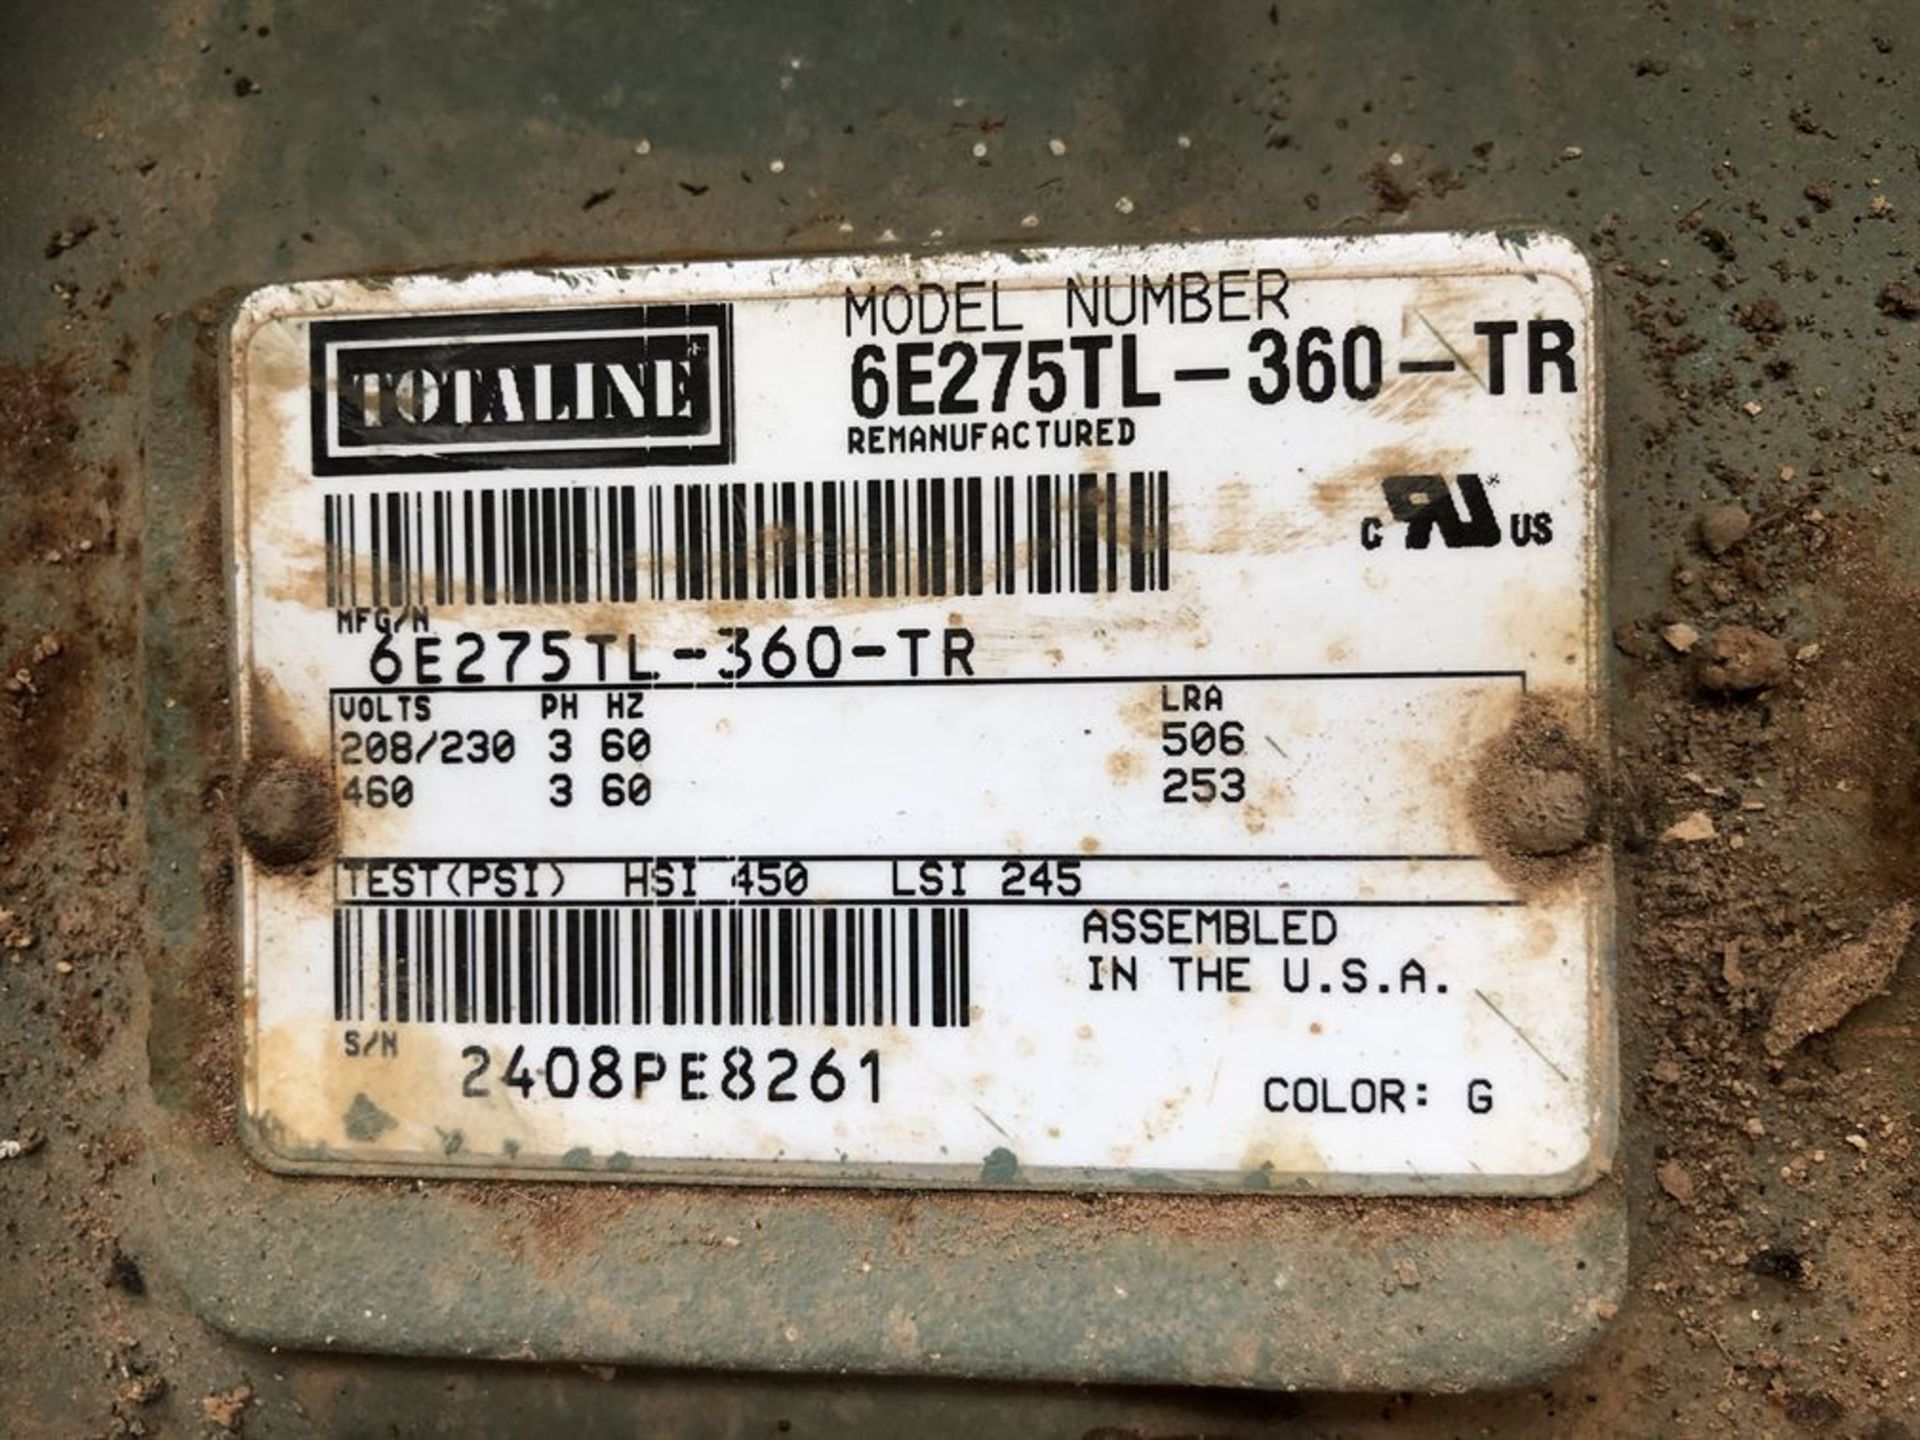 TOTALINE 6E275TC Semi Hermetic Compressor (Location: Motor Warehouse) - Image 2 of 2